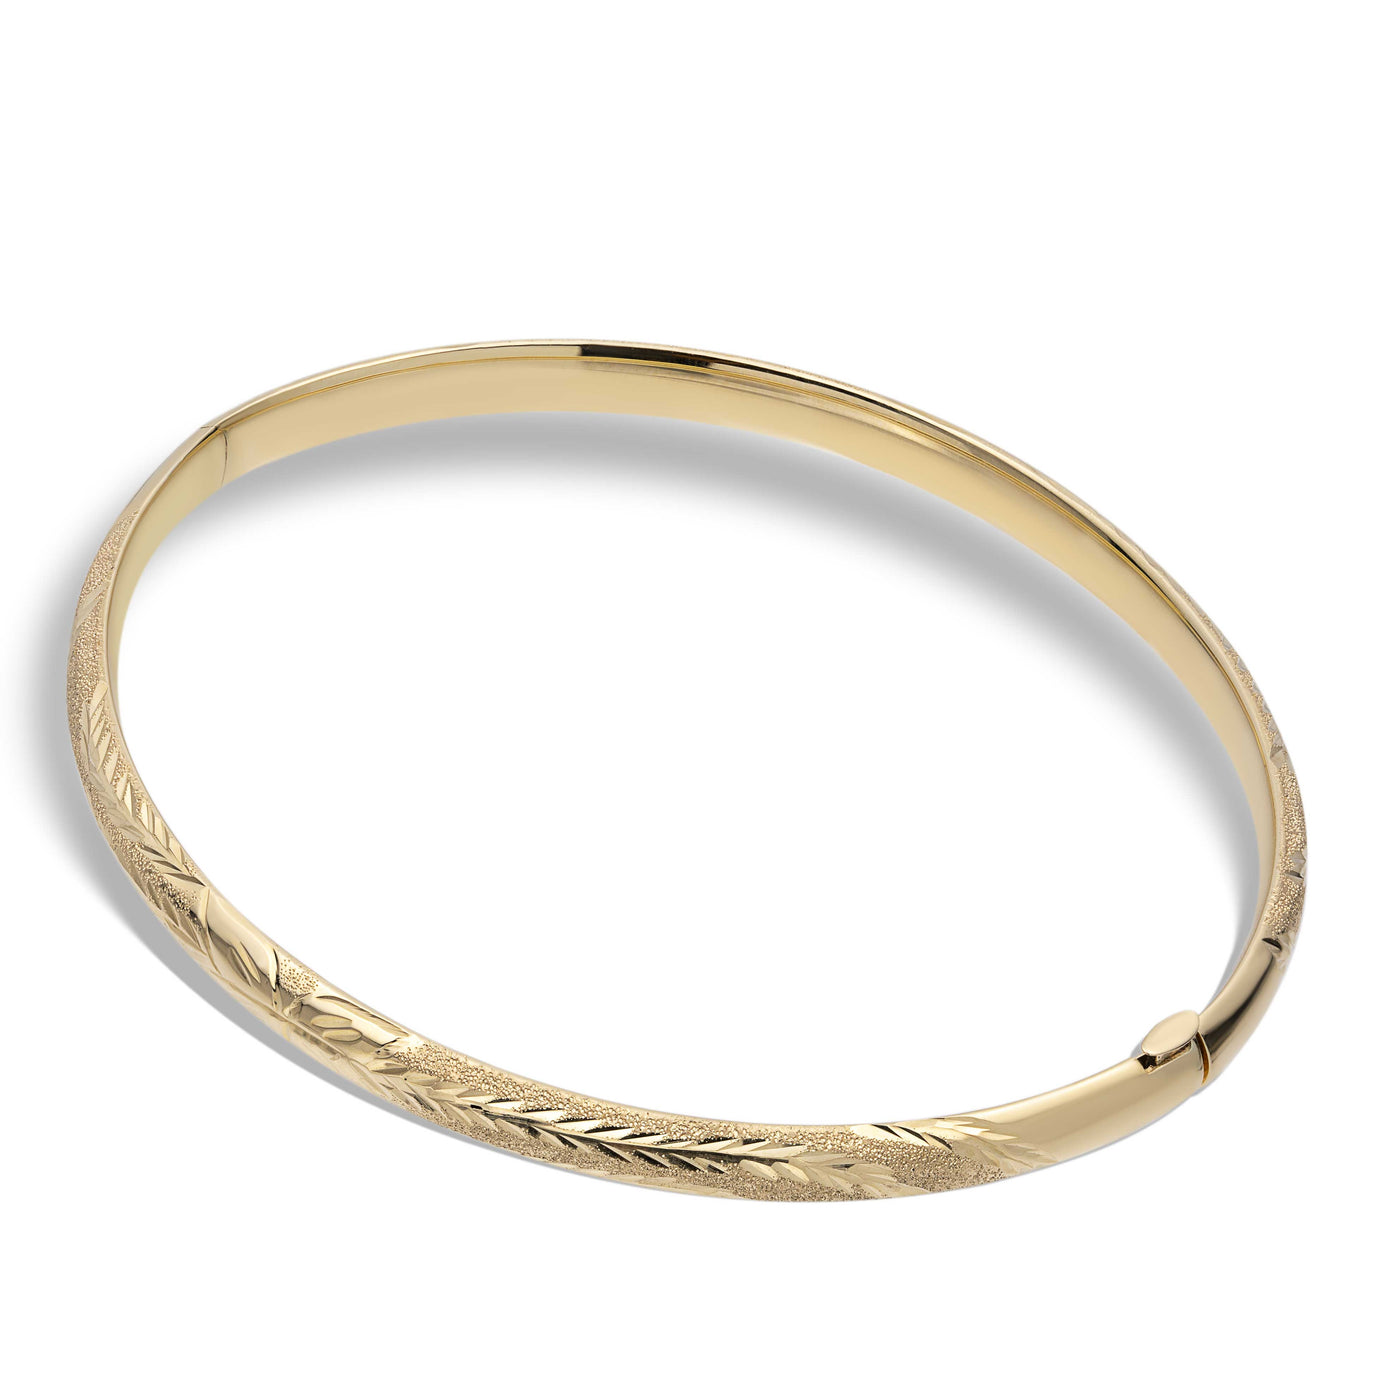 Florentine Design Comfort Fit Bangle Bracelet 10K Yellow Gold